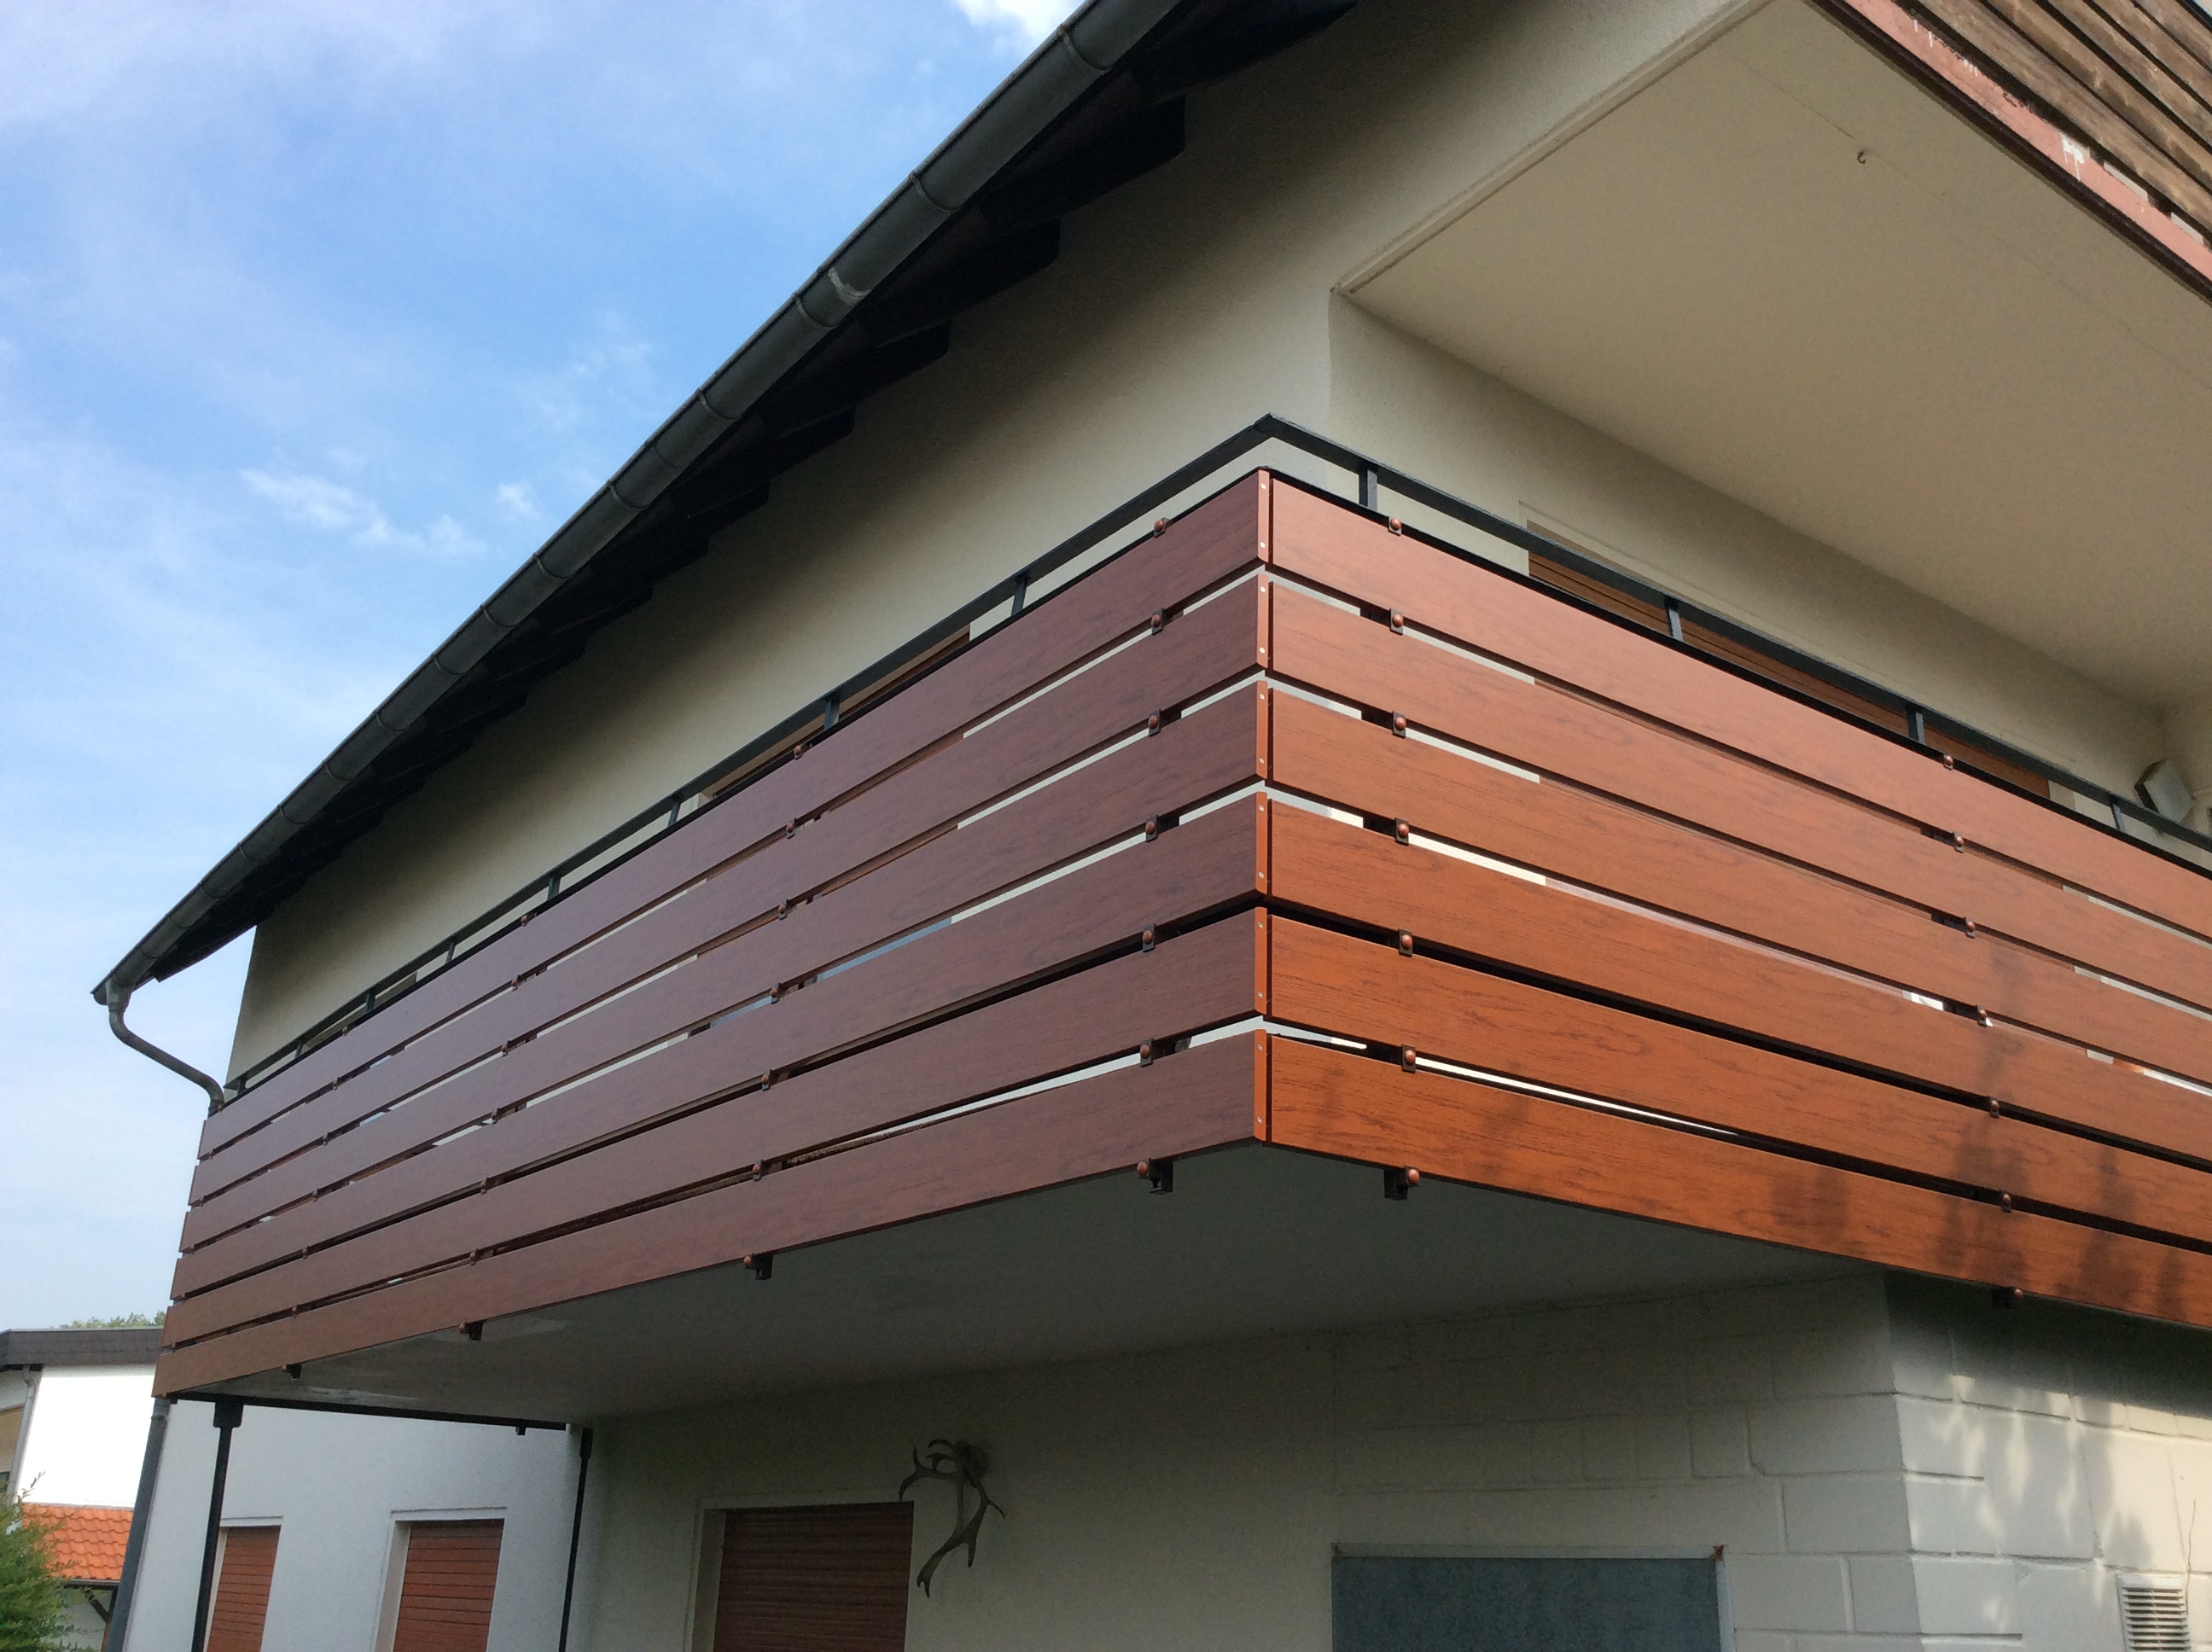 Moderner Balkonbau für Häuser im Raum Eisenach oder Heilbad Heiligenstadt